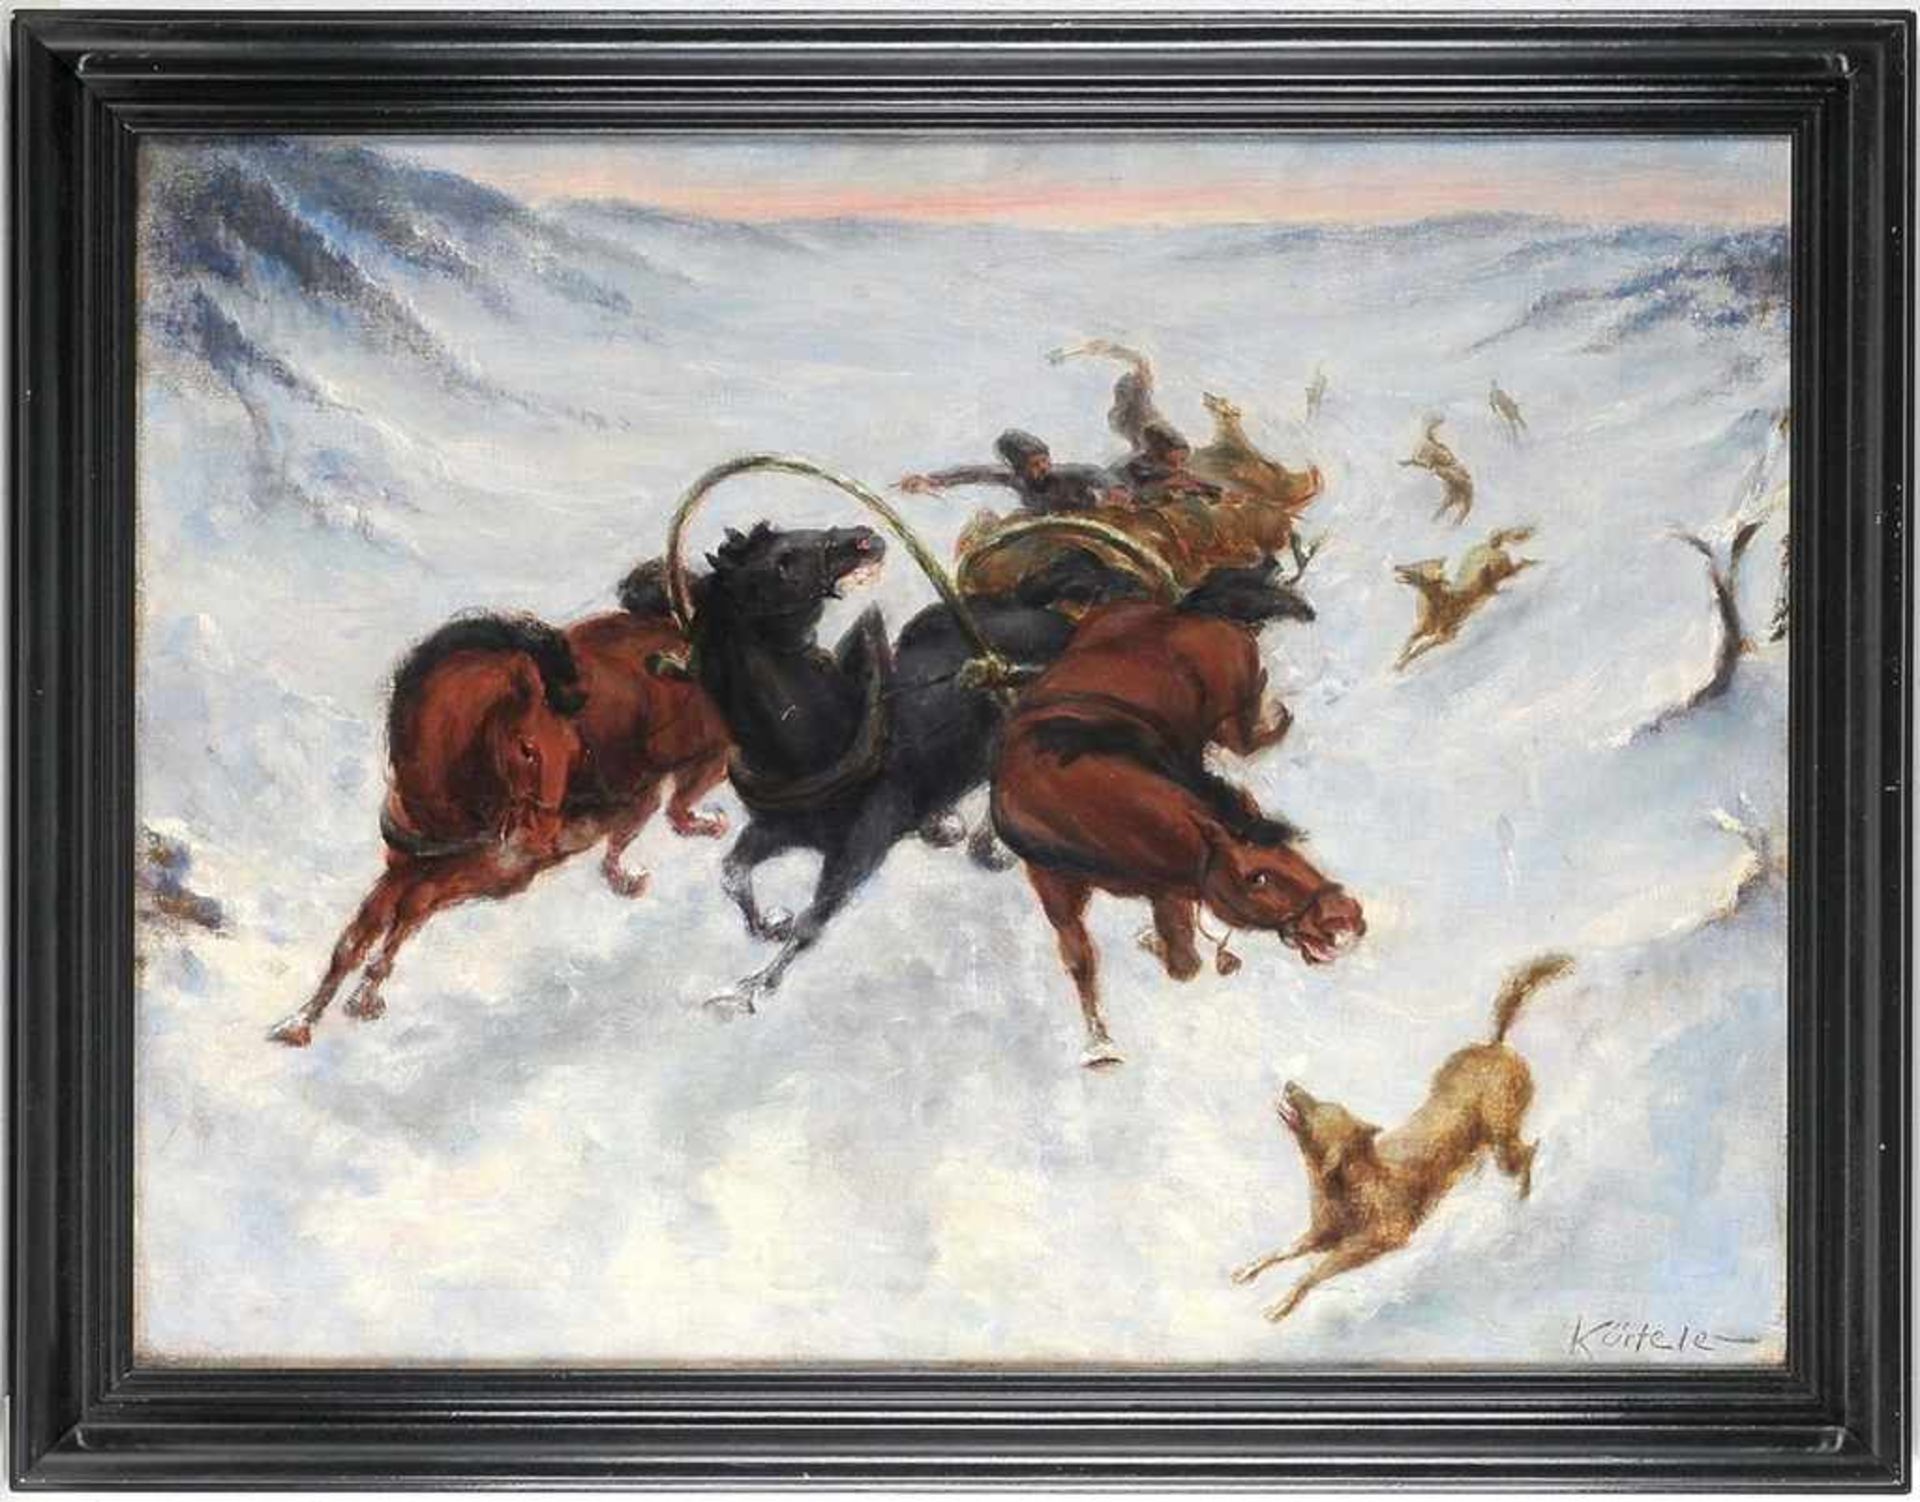 Kürteler, A. (Deutscher? Maler, 1. H. 20. Jh.) Öl/Lwd. Von Wölfen angegriffene Troika im Schnee.